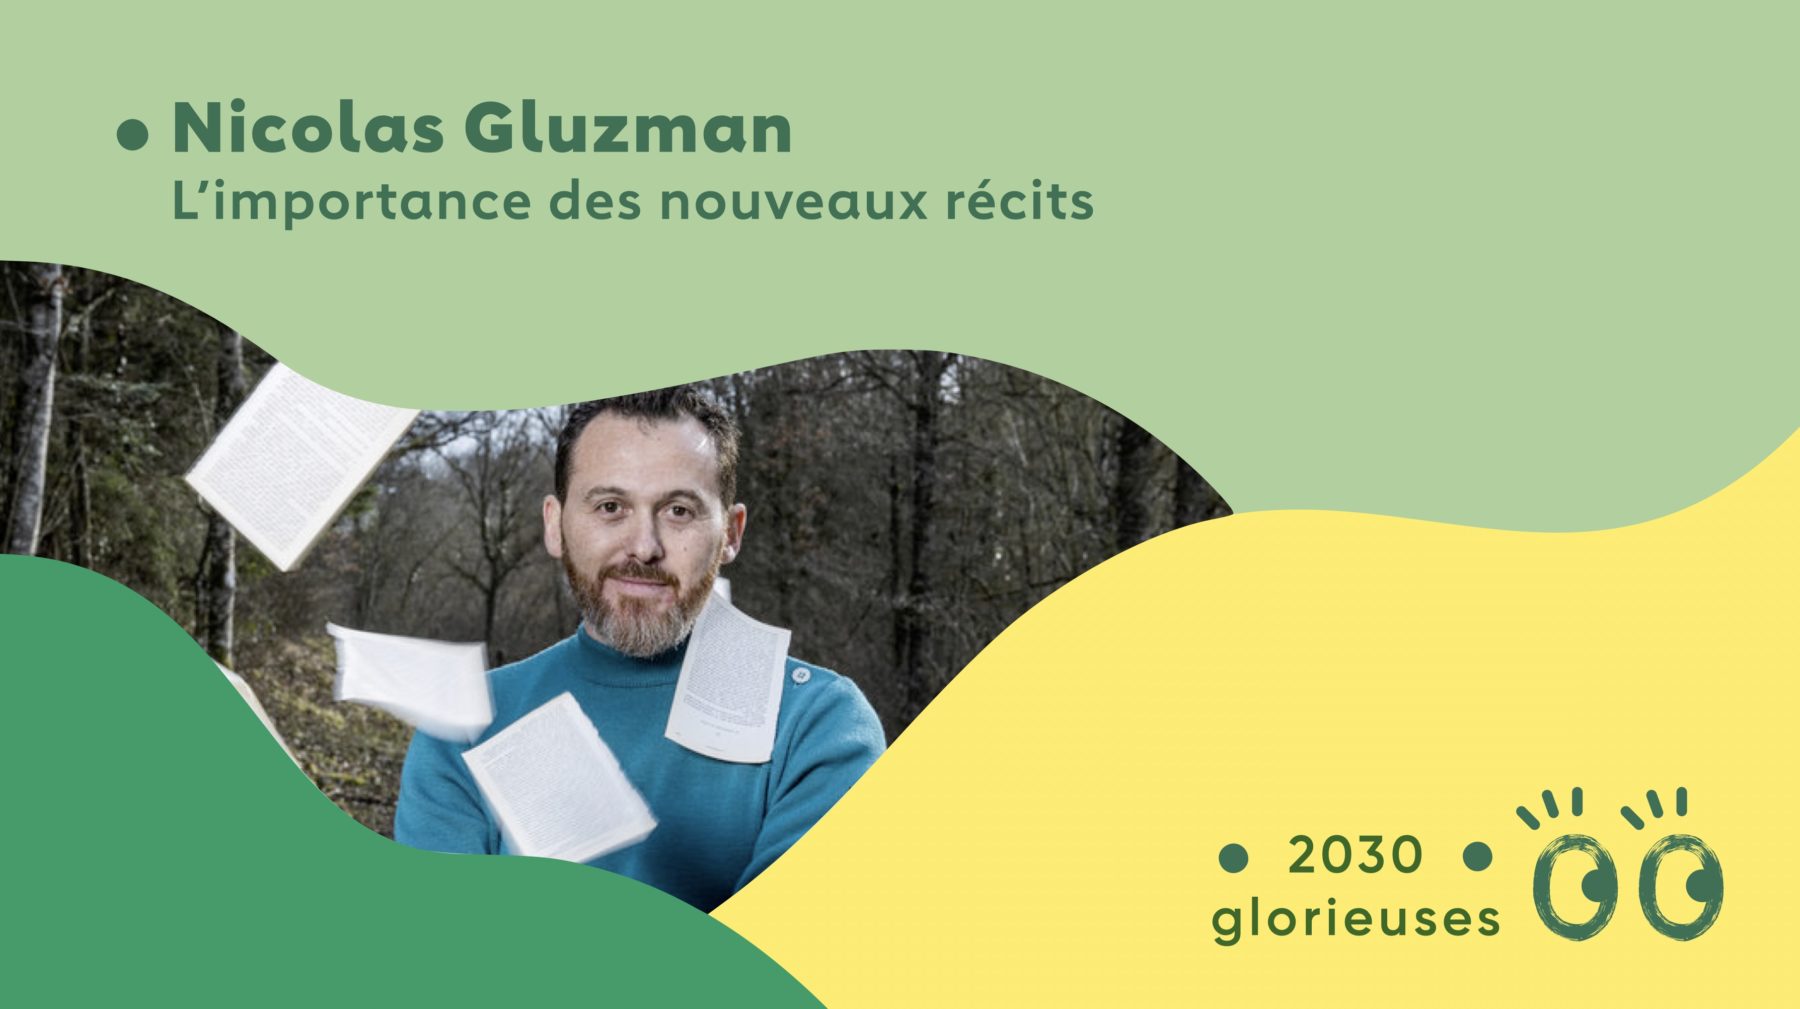 2030 Glorieuses #103 : Nicolas Gluzman : “ Proposer d'imaginer un futur joyeux, ça génère beaucoup de gratitude."